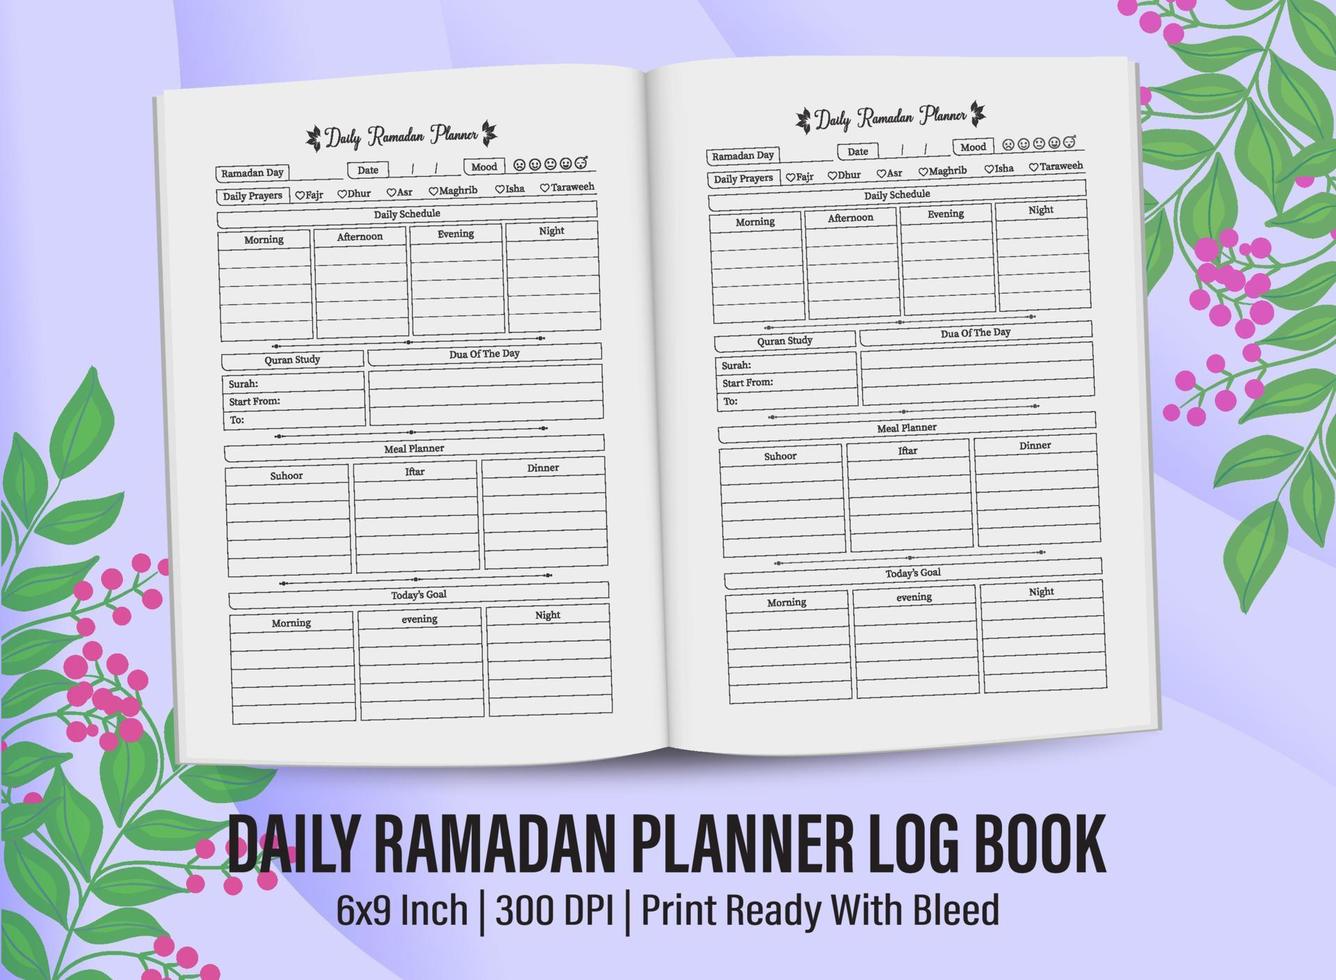 journal de bord du planificateur de ramadan pour l'intérieur de kdp. conception de modèle de journal de bord de planificateur de ramadan pour l'intérieur de kdp. vecteur